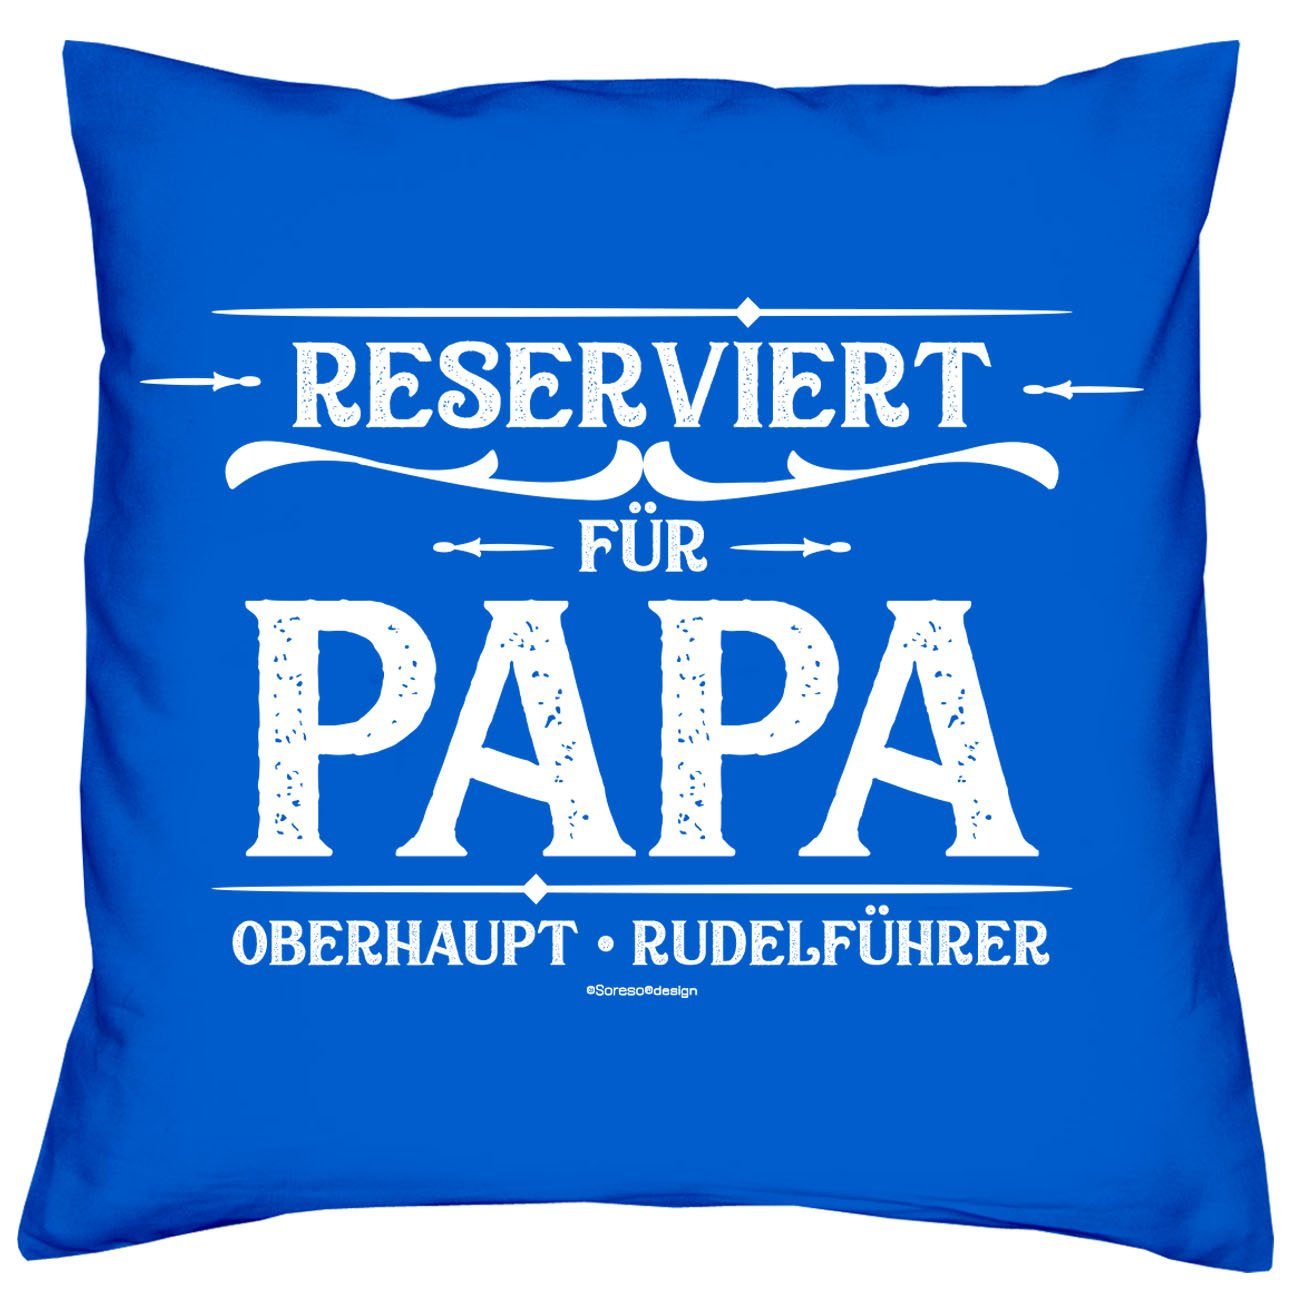 Weihnachtsgeschenk Soreso® Papa Reserviert Dekokissen Socken & Sleep, für Sprüche Kissen Geschenkidee royal-blau